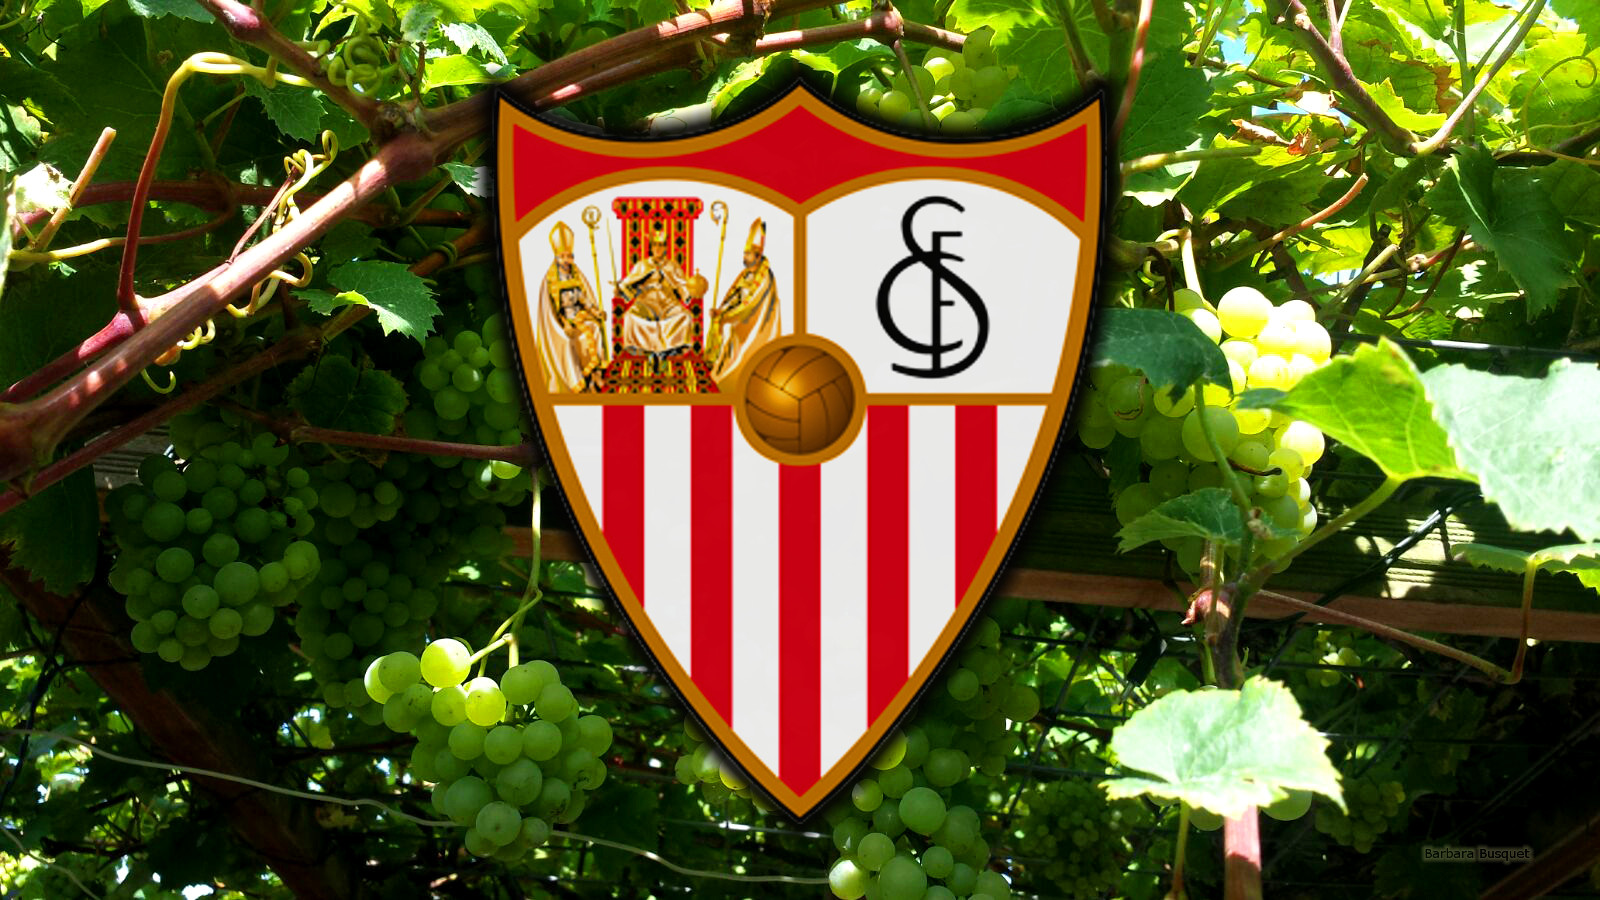 Sevilla F Tbol Club S A D Barbaras HD Wallpaper